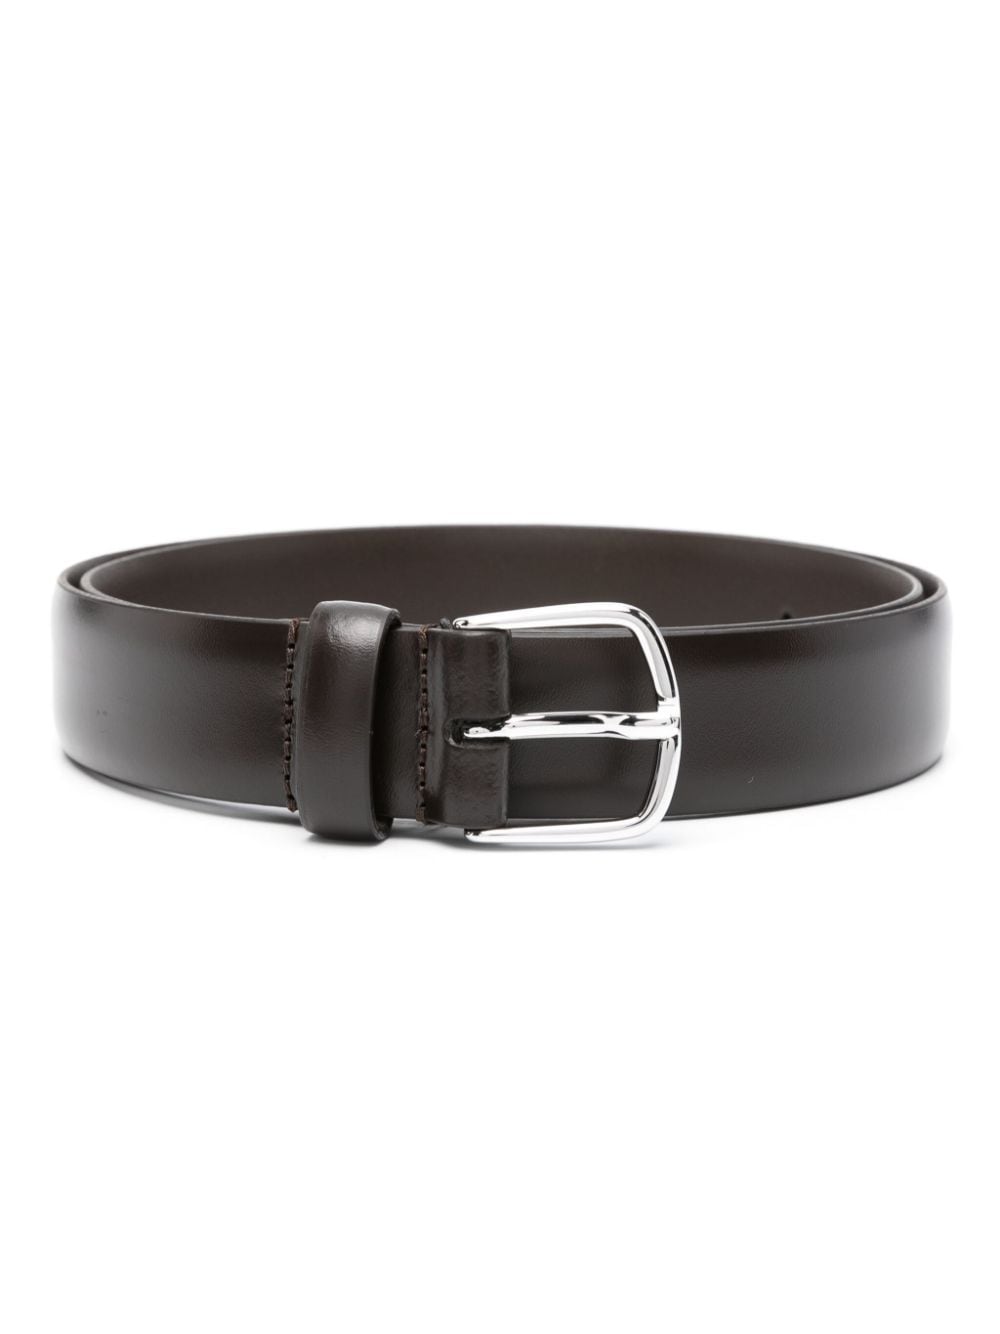 FURSAC smooth-grain leather belt - Brown von FURSAC